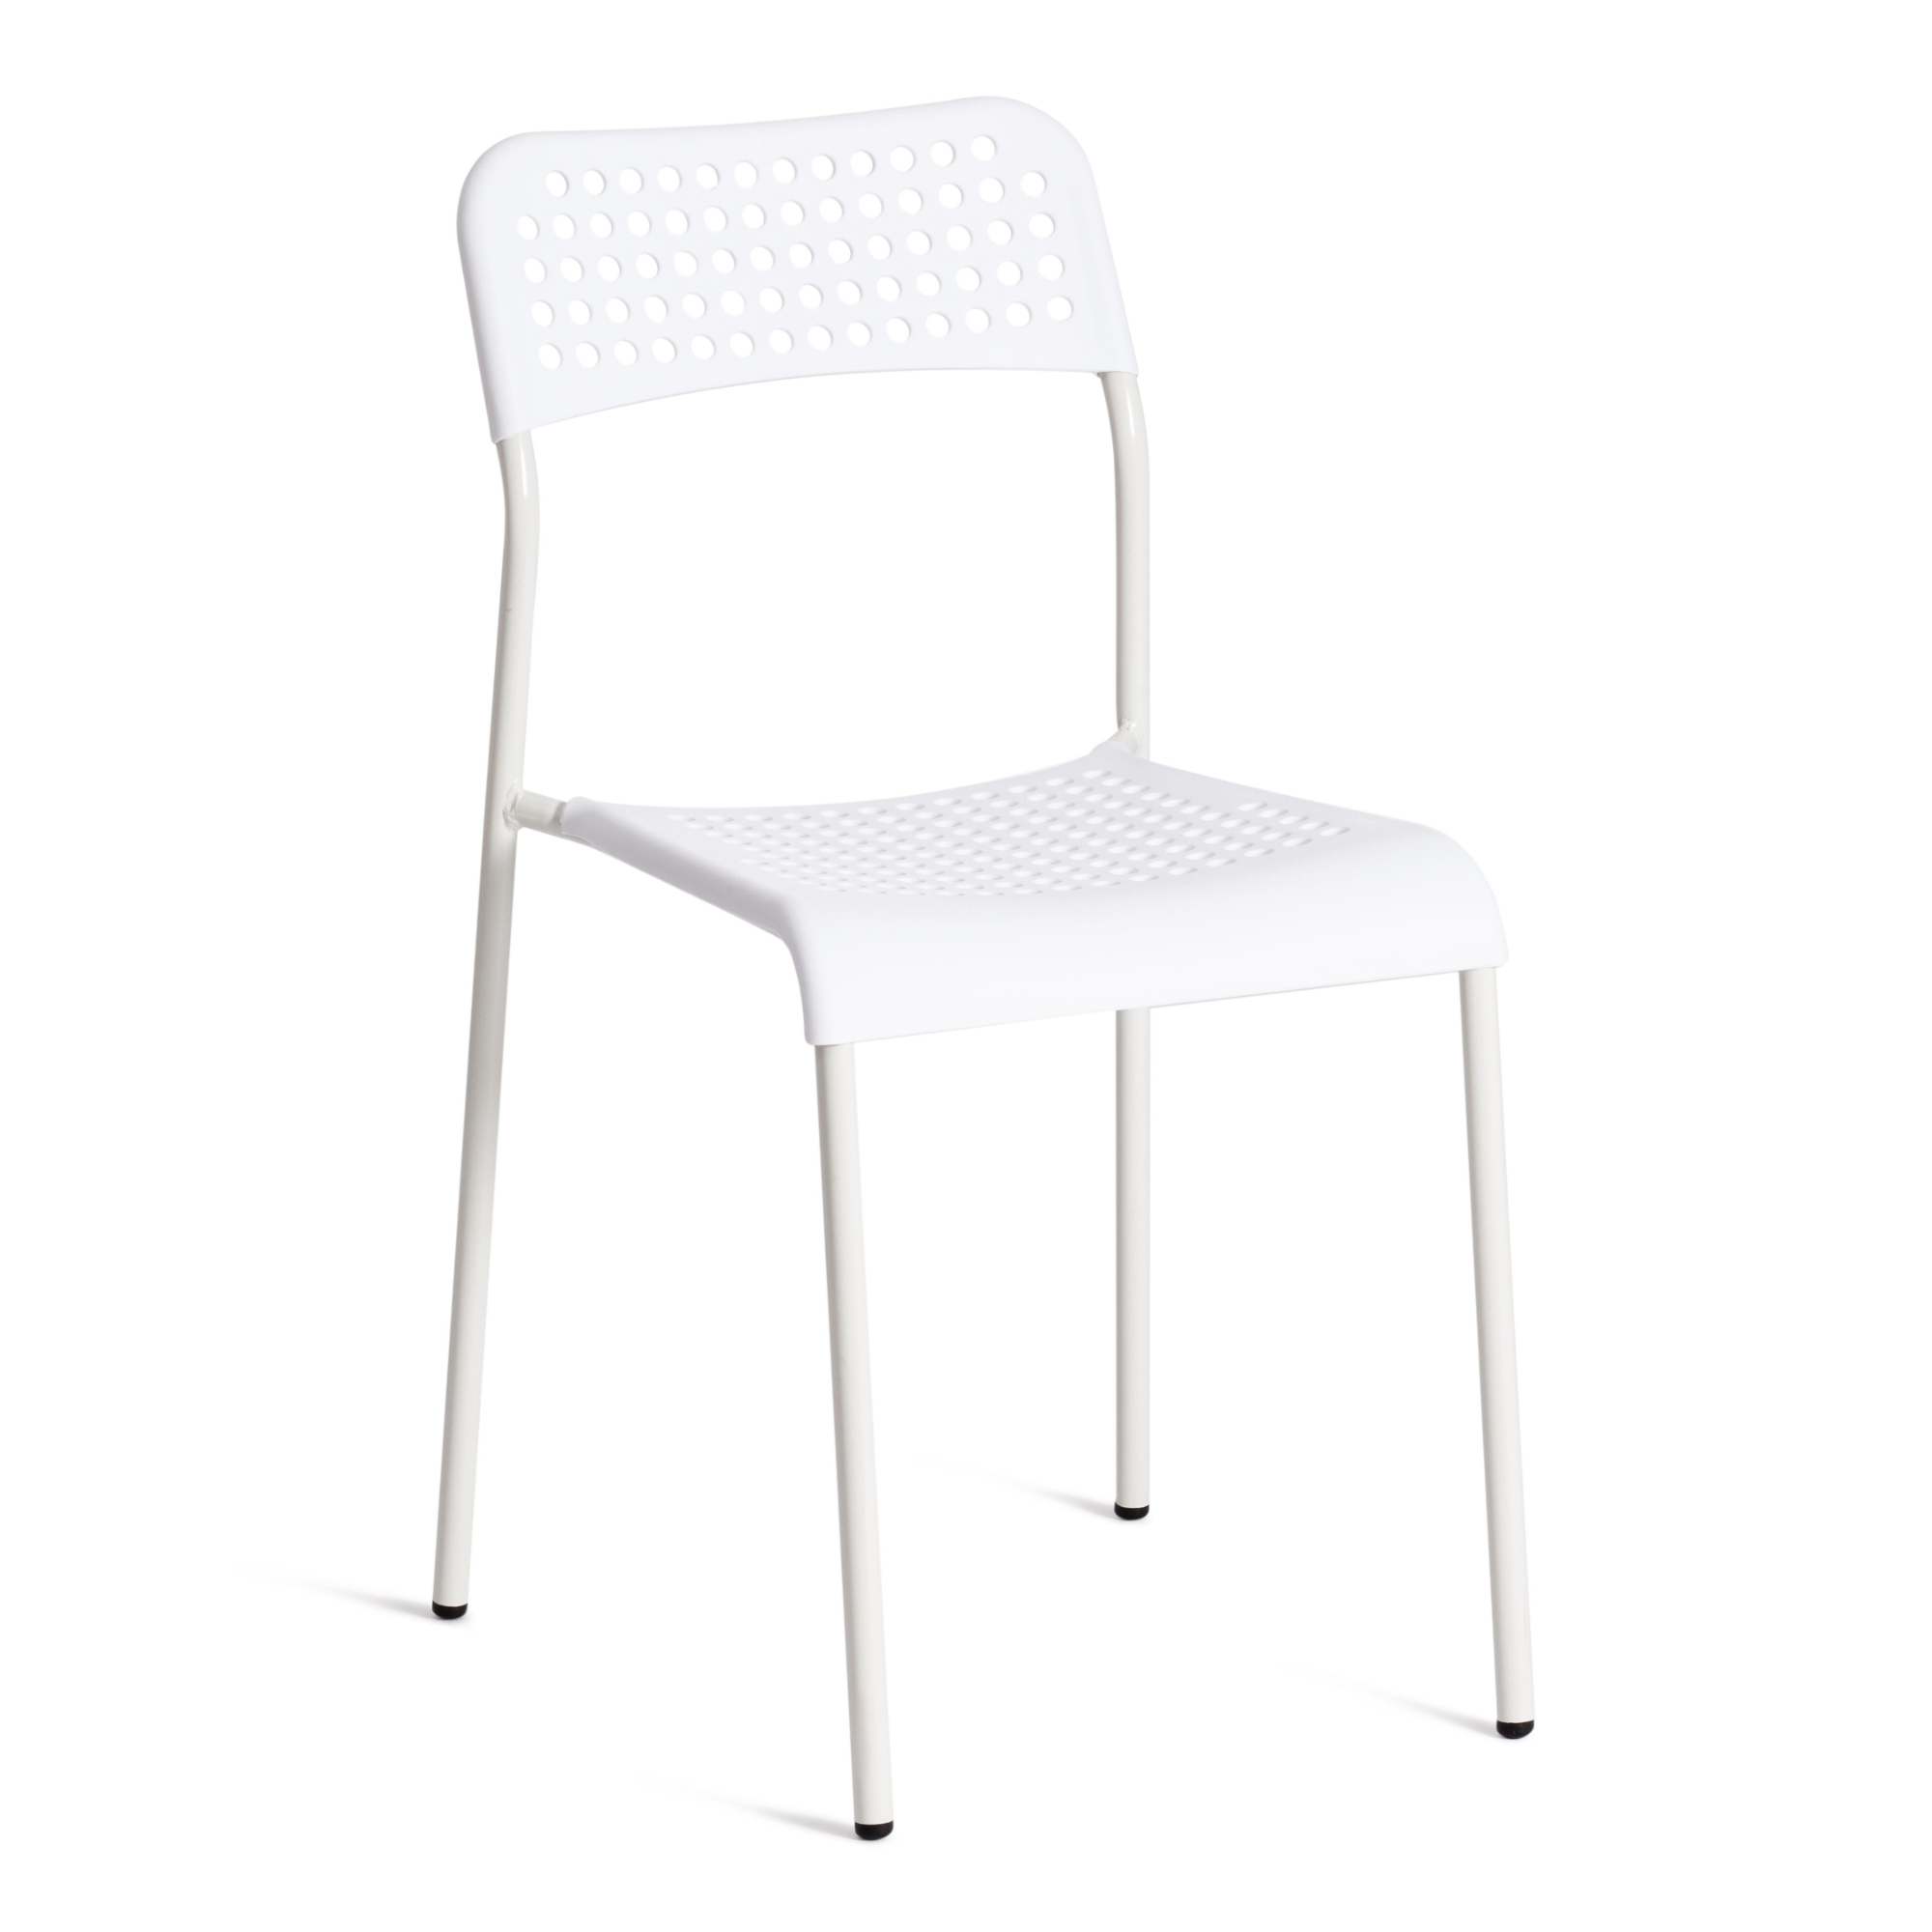 Стул ТС Adde белый пластиковый с металлическими ножками 39х49х78 см современный стул fallon с металлическими ножками зеленый бархат